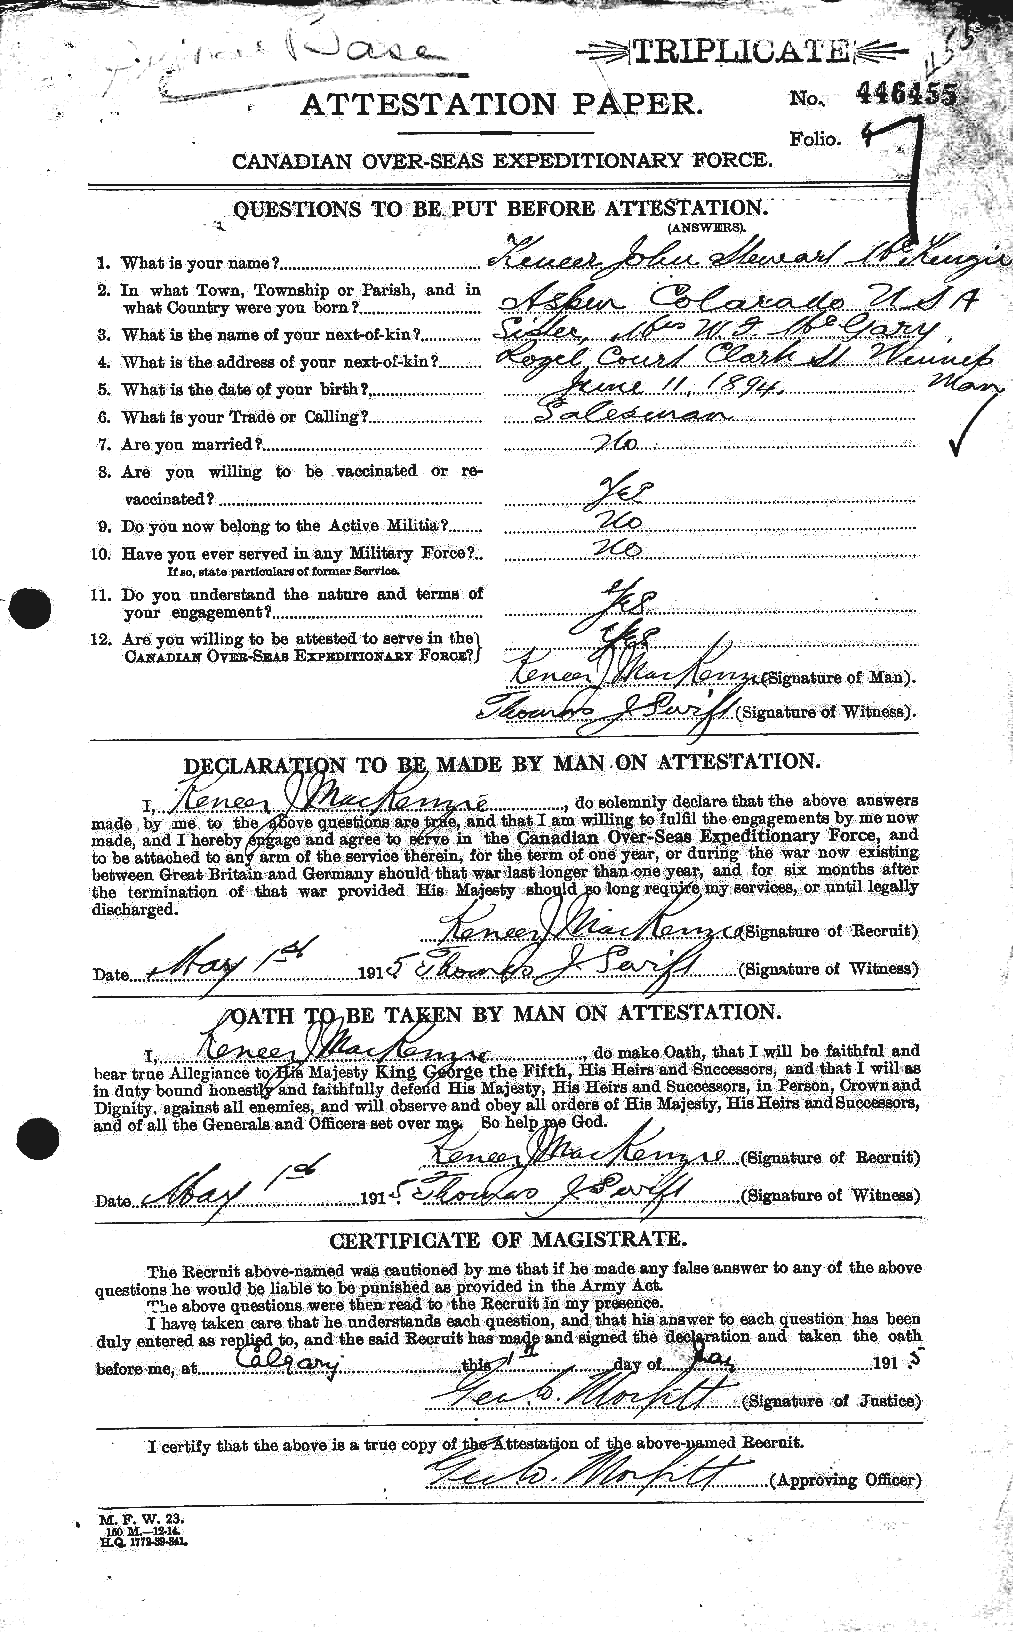 Dossiers du Personnel de la Première Guerre mondiale - CEC 529457a